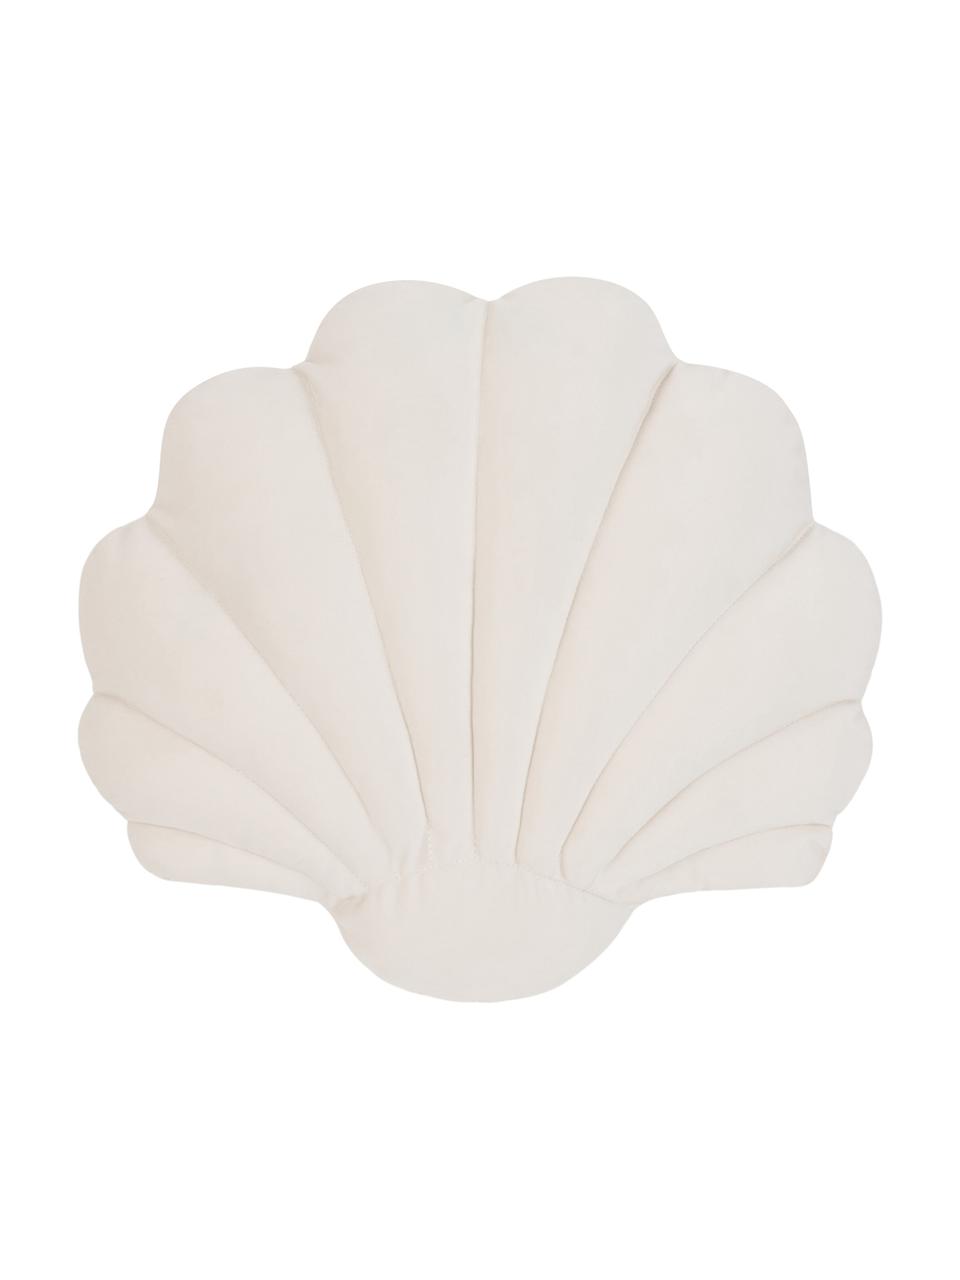 Fluwelen kussen Shell in schelp vorm, Crèmewit, B 32 x L 27 cm